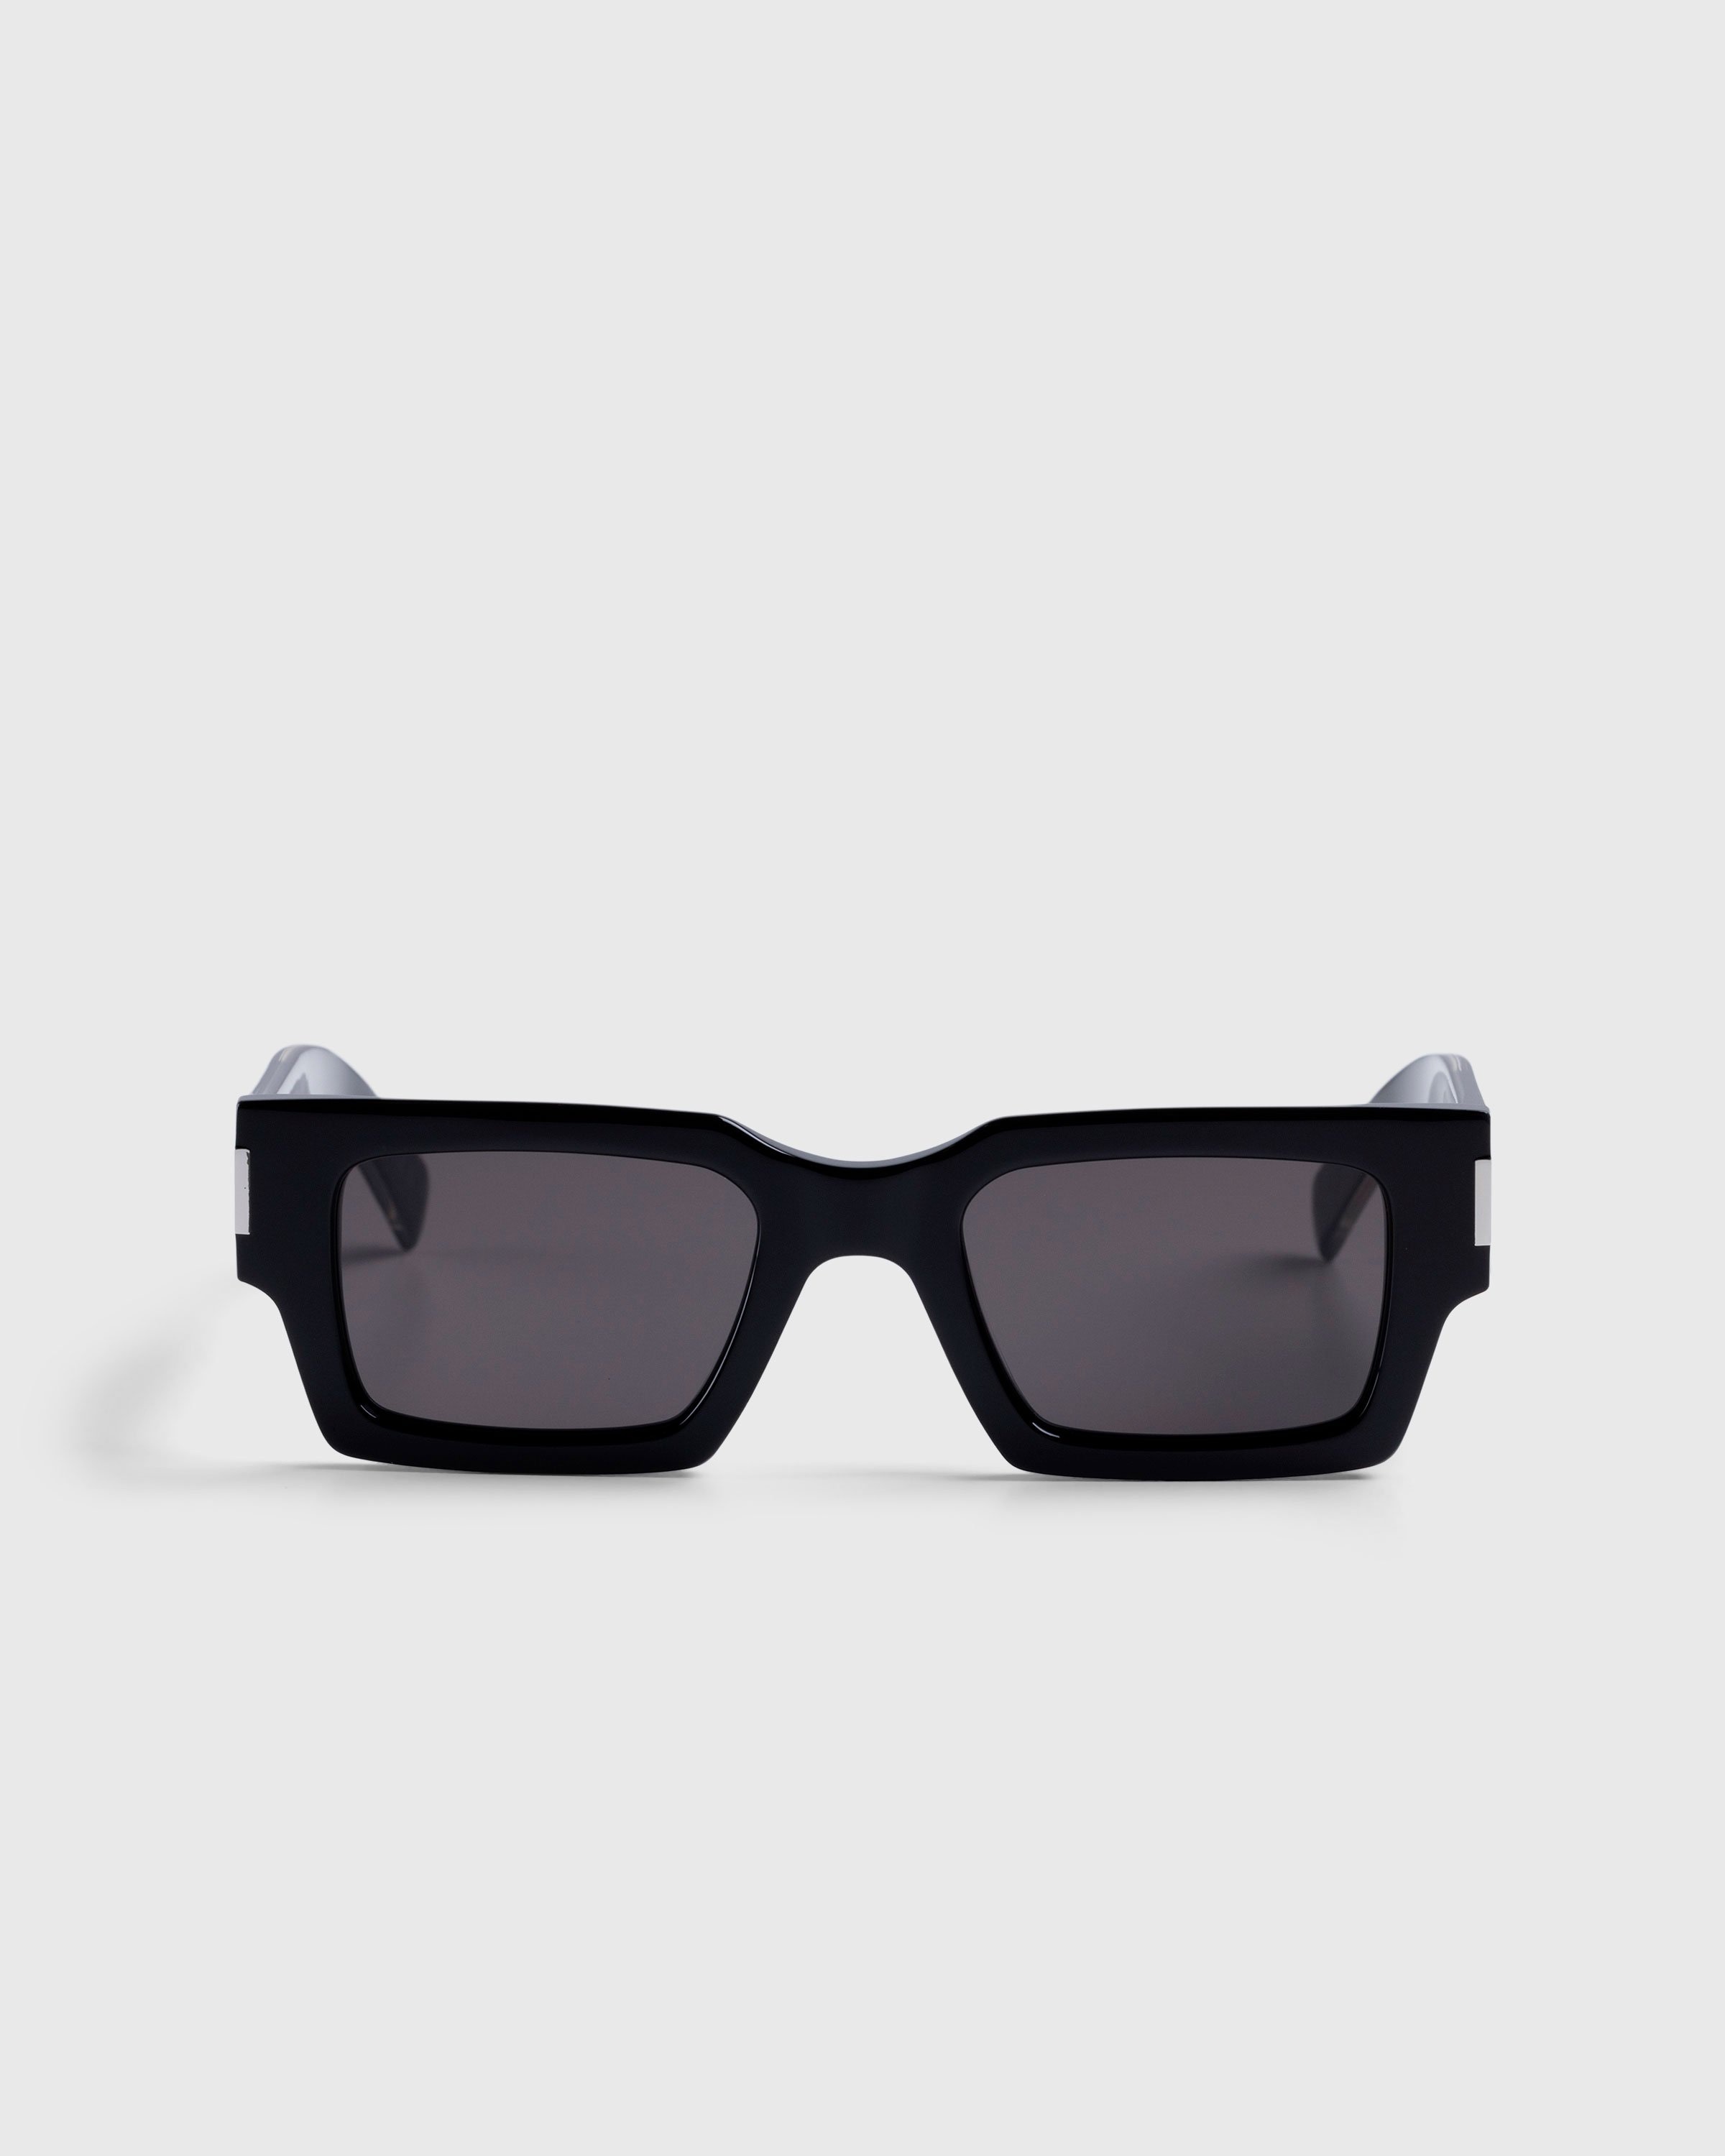 Saint Laurent – SL 572 Square Frame Sunglasses Black/Crystal - Eyewear - Multi - Image 1